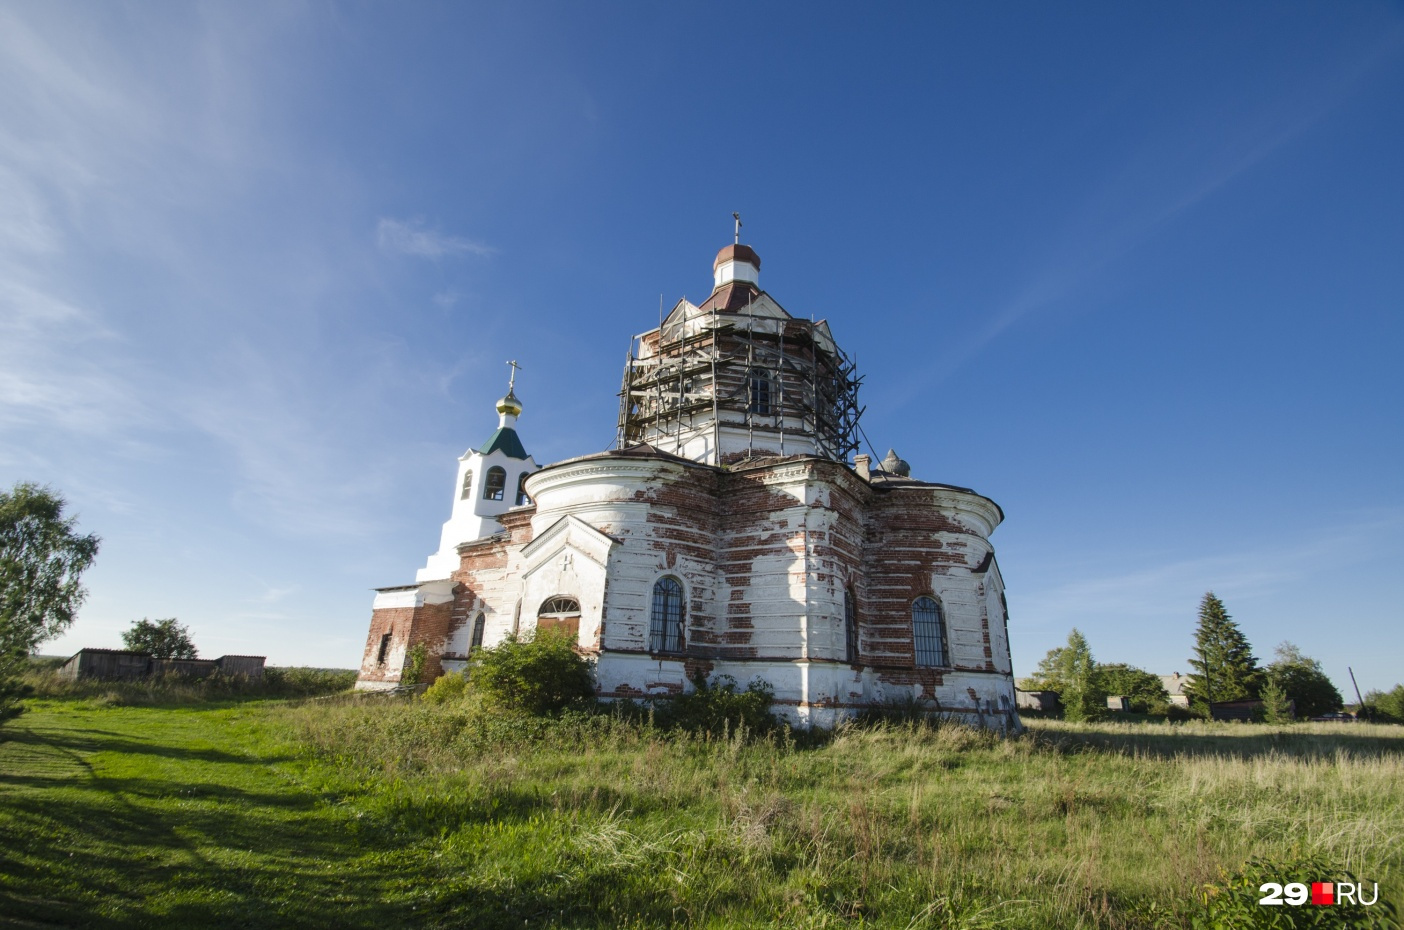 Кирпичная церковь Дмитрия Солунского покрылась трещинами, но службы здесь еще идут